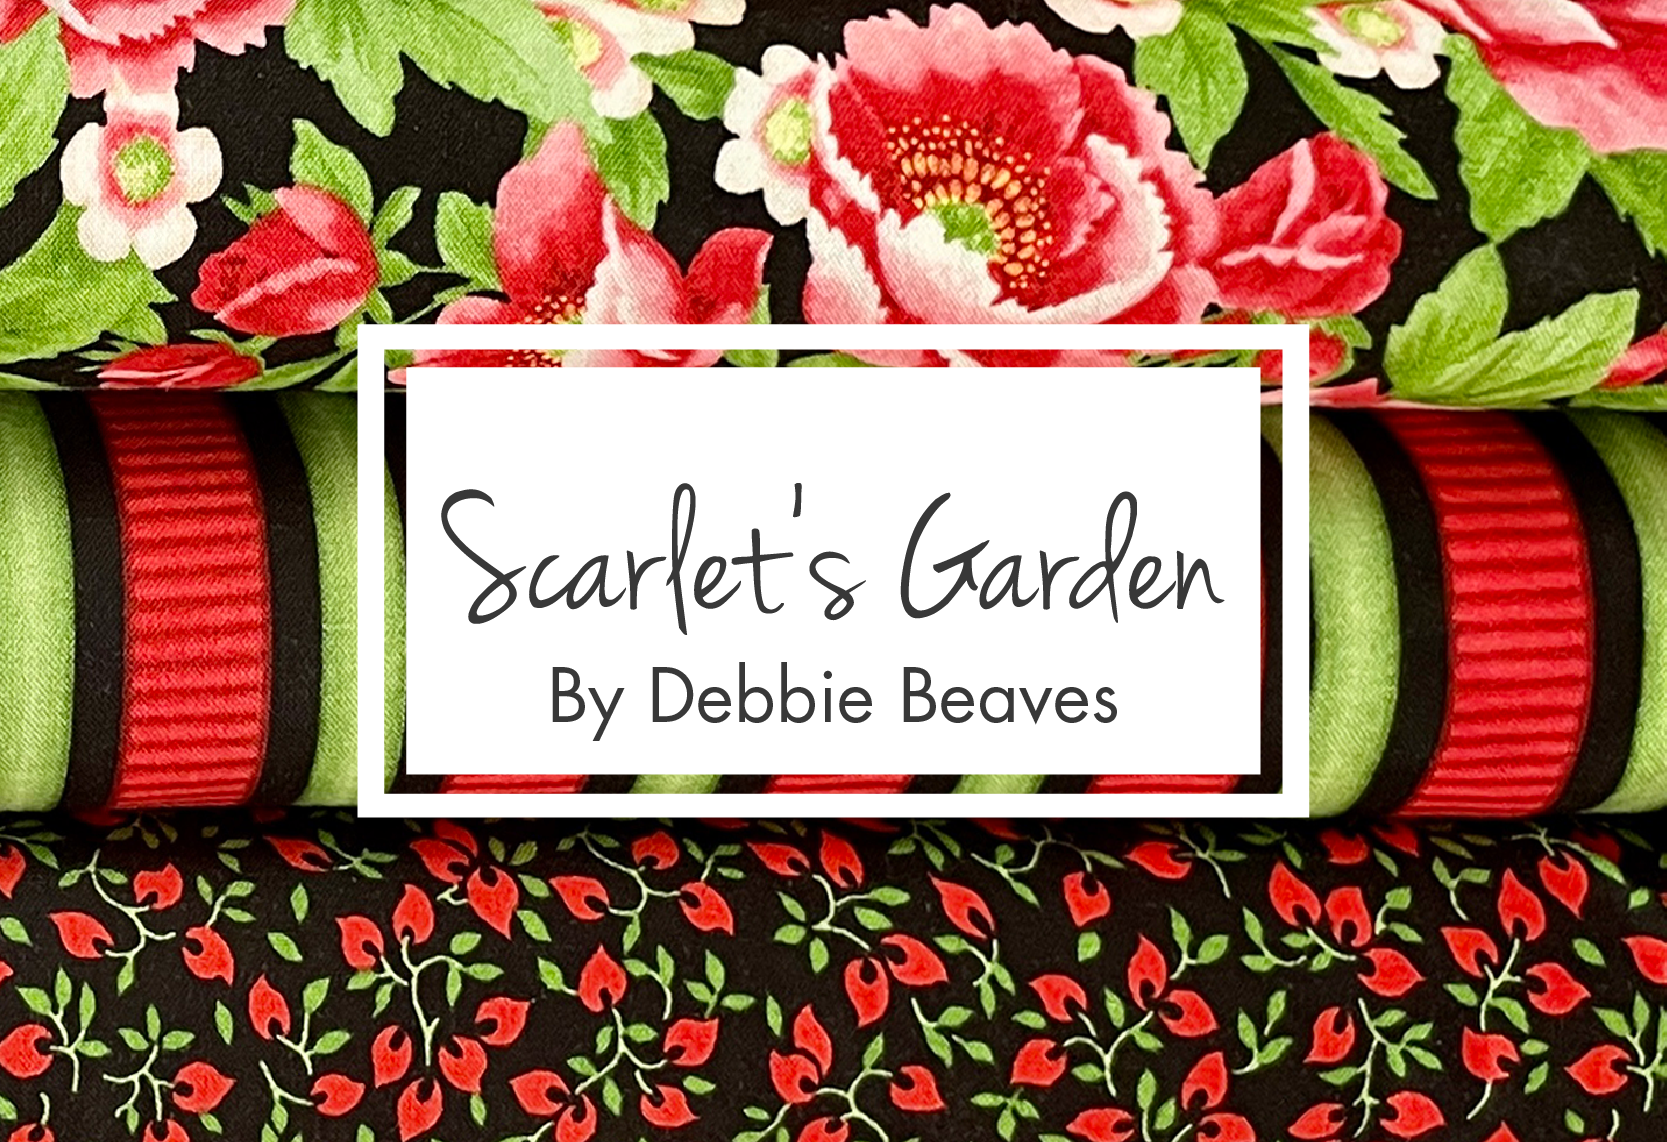 Scarlet's Garden by Debbie Beaves